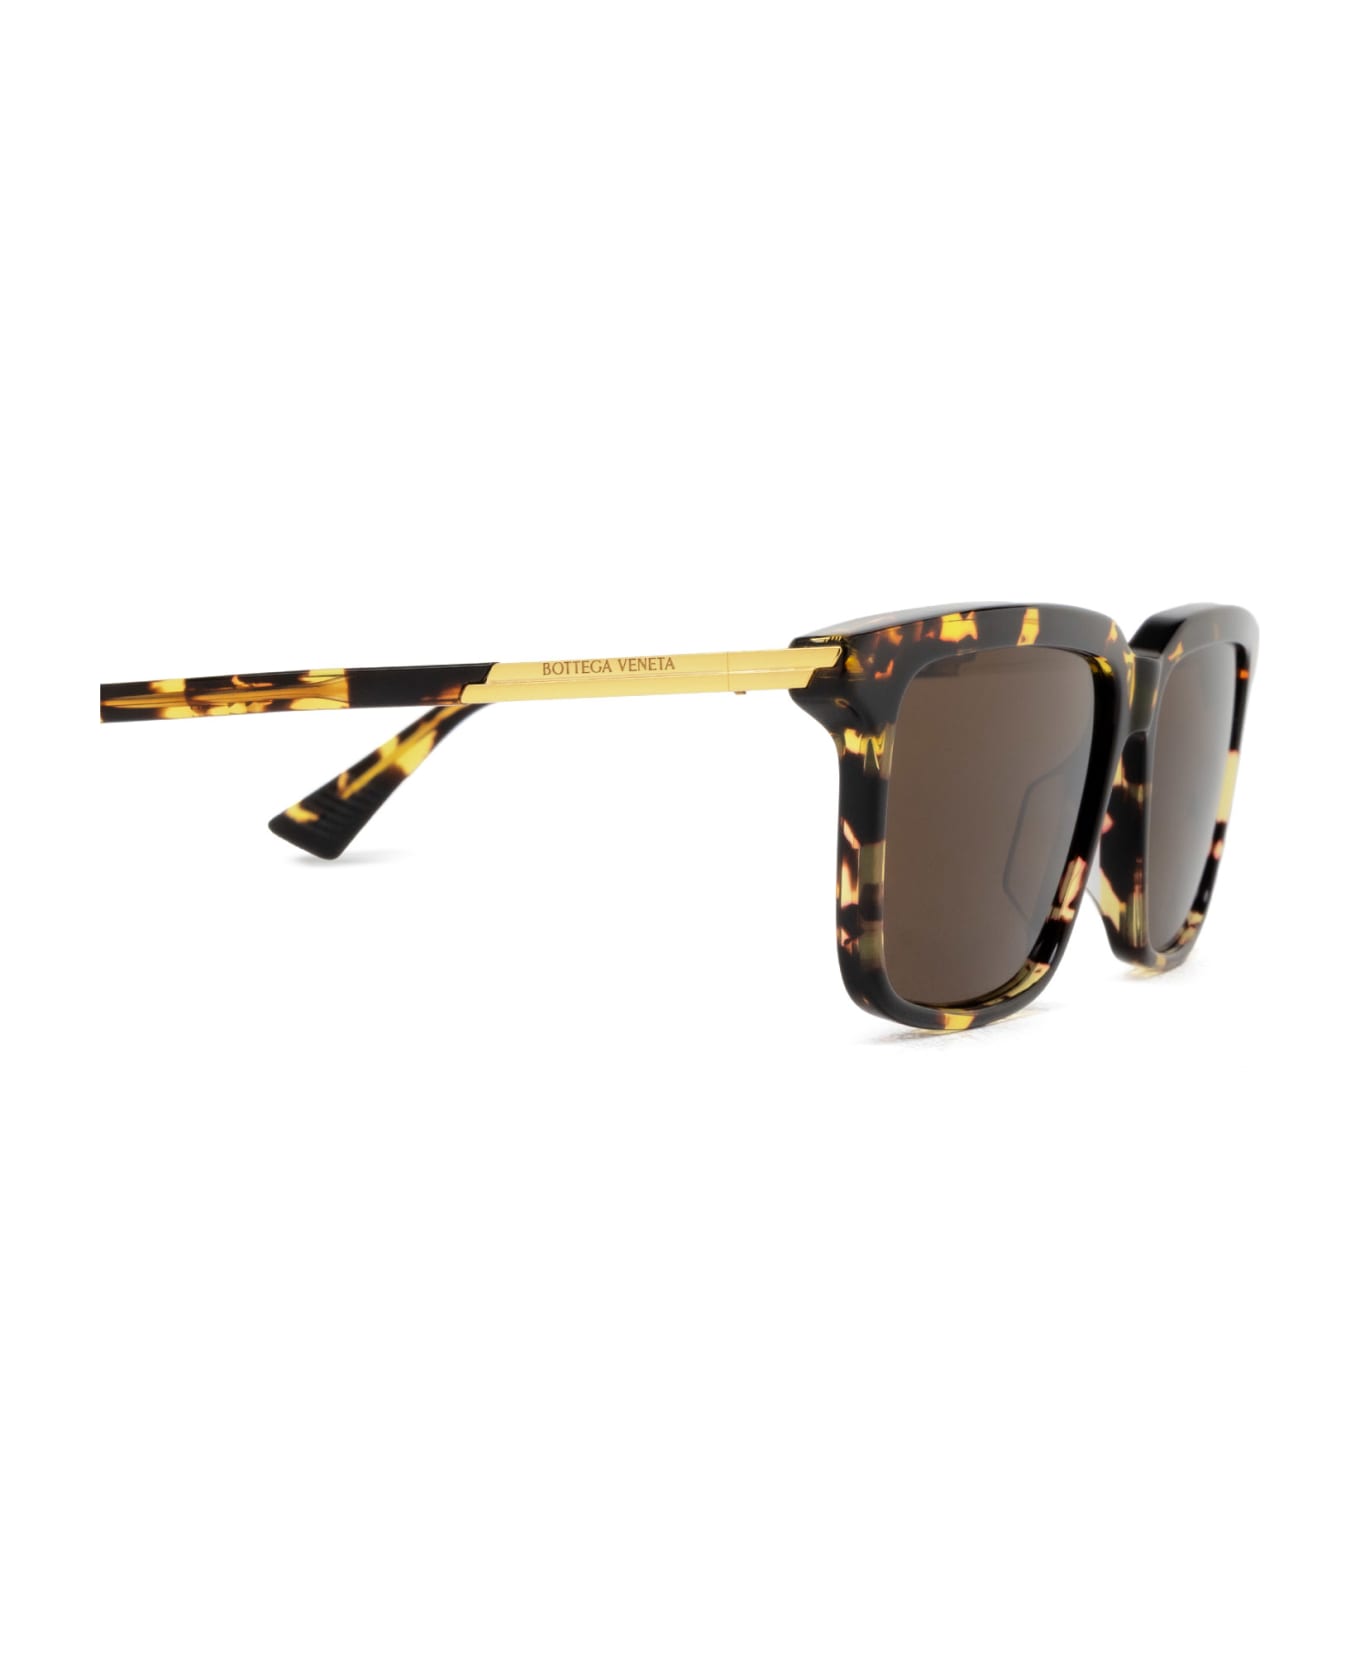 Bottega Veneta Eyewear Bv1261s Havana Sunglasses - Havana